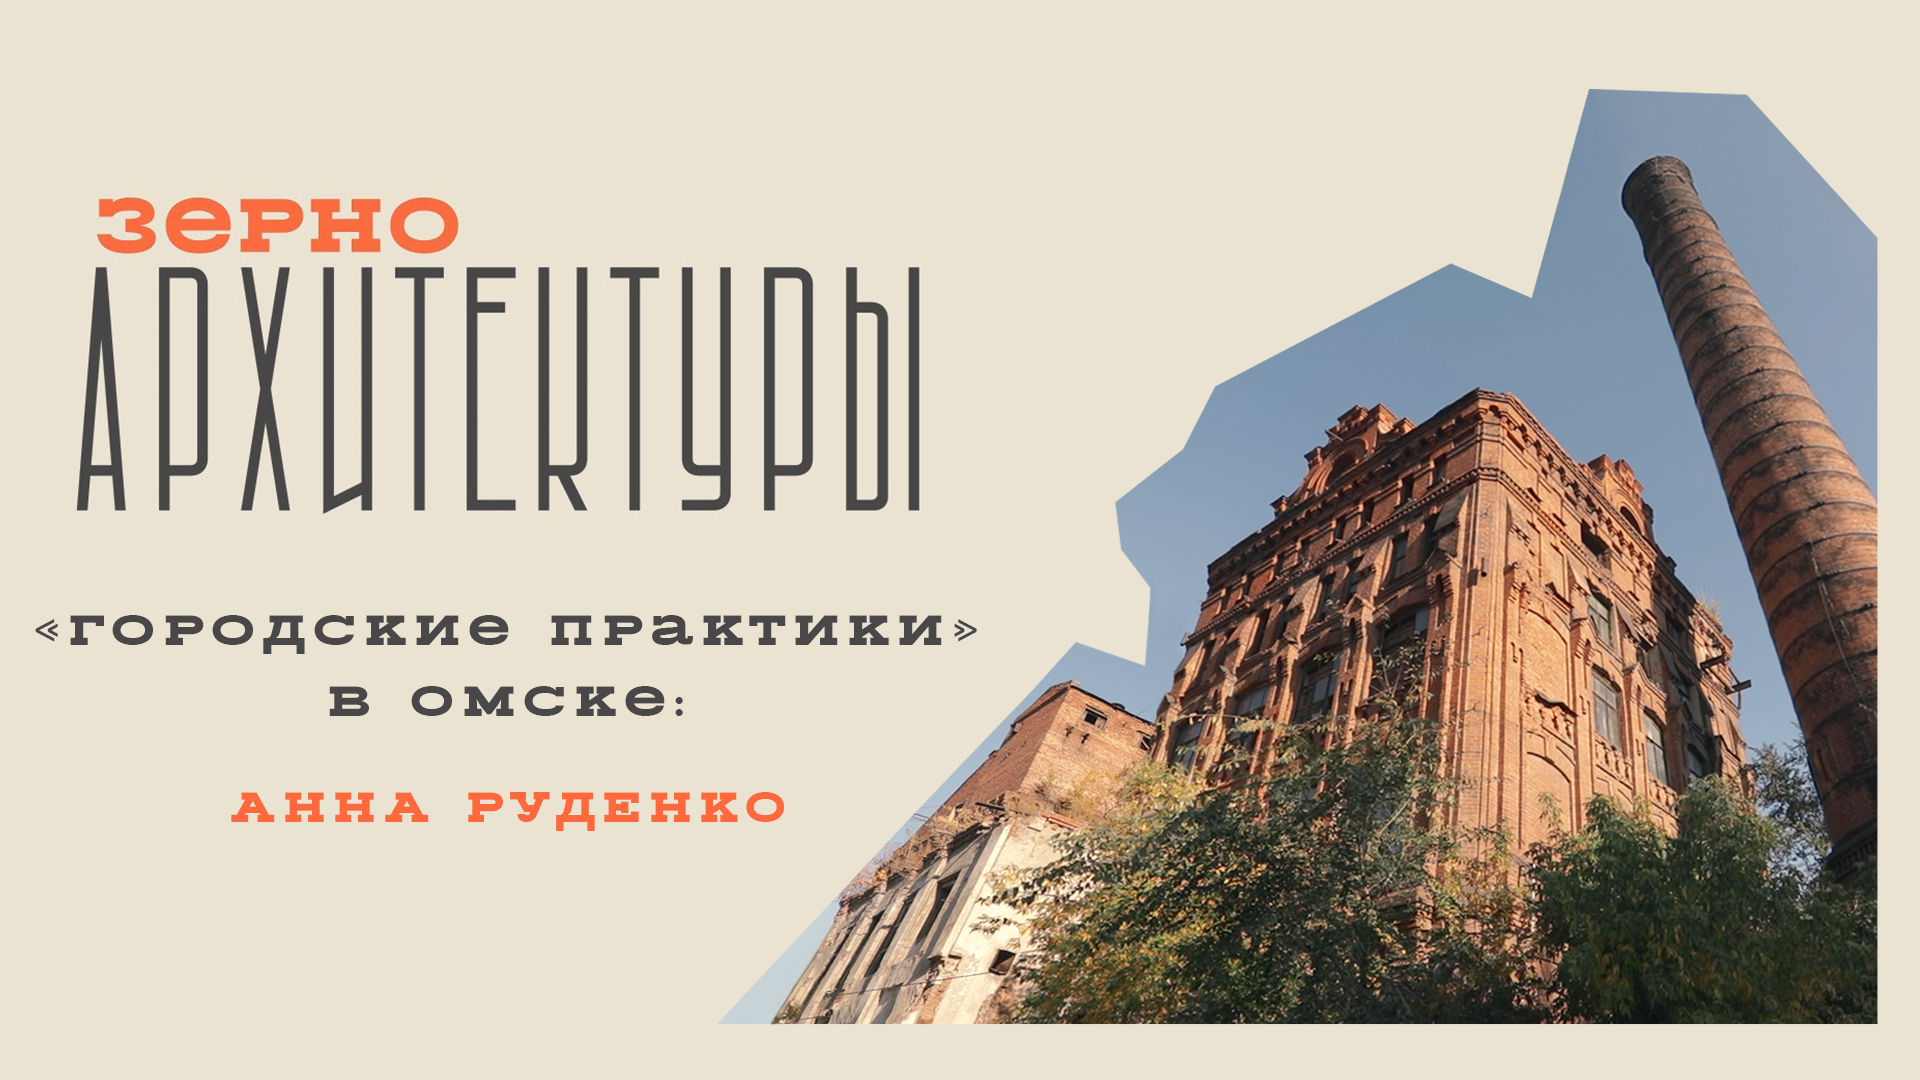 «Городские практики» в Омске: Анна Руденко | Видеоподкаст «Зерно архитектуры»